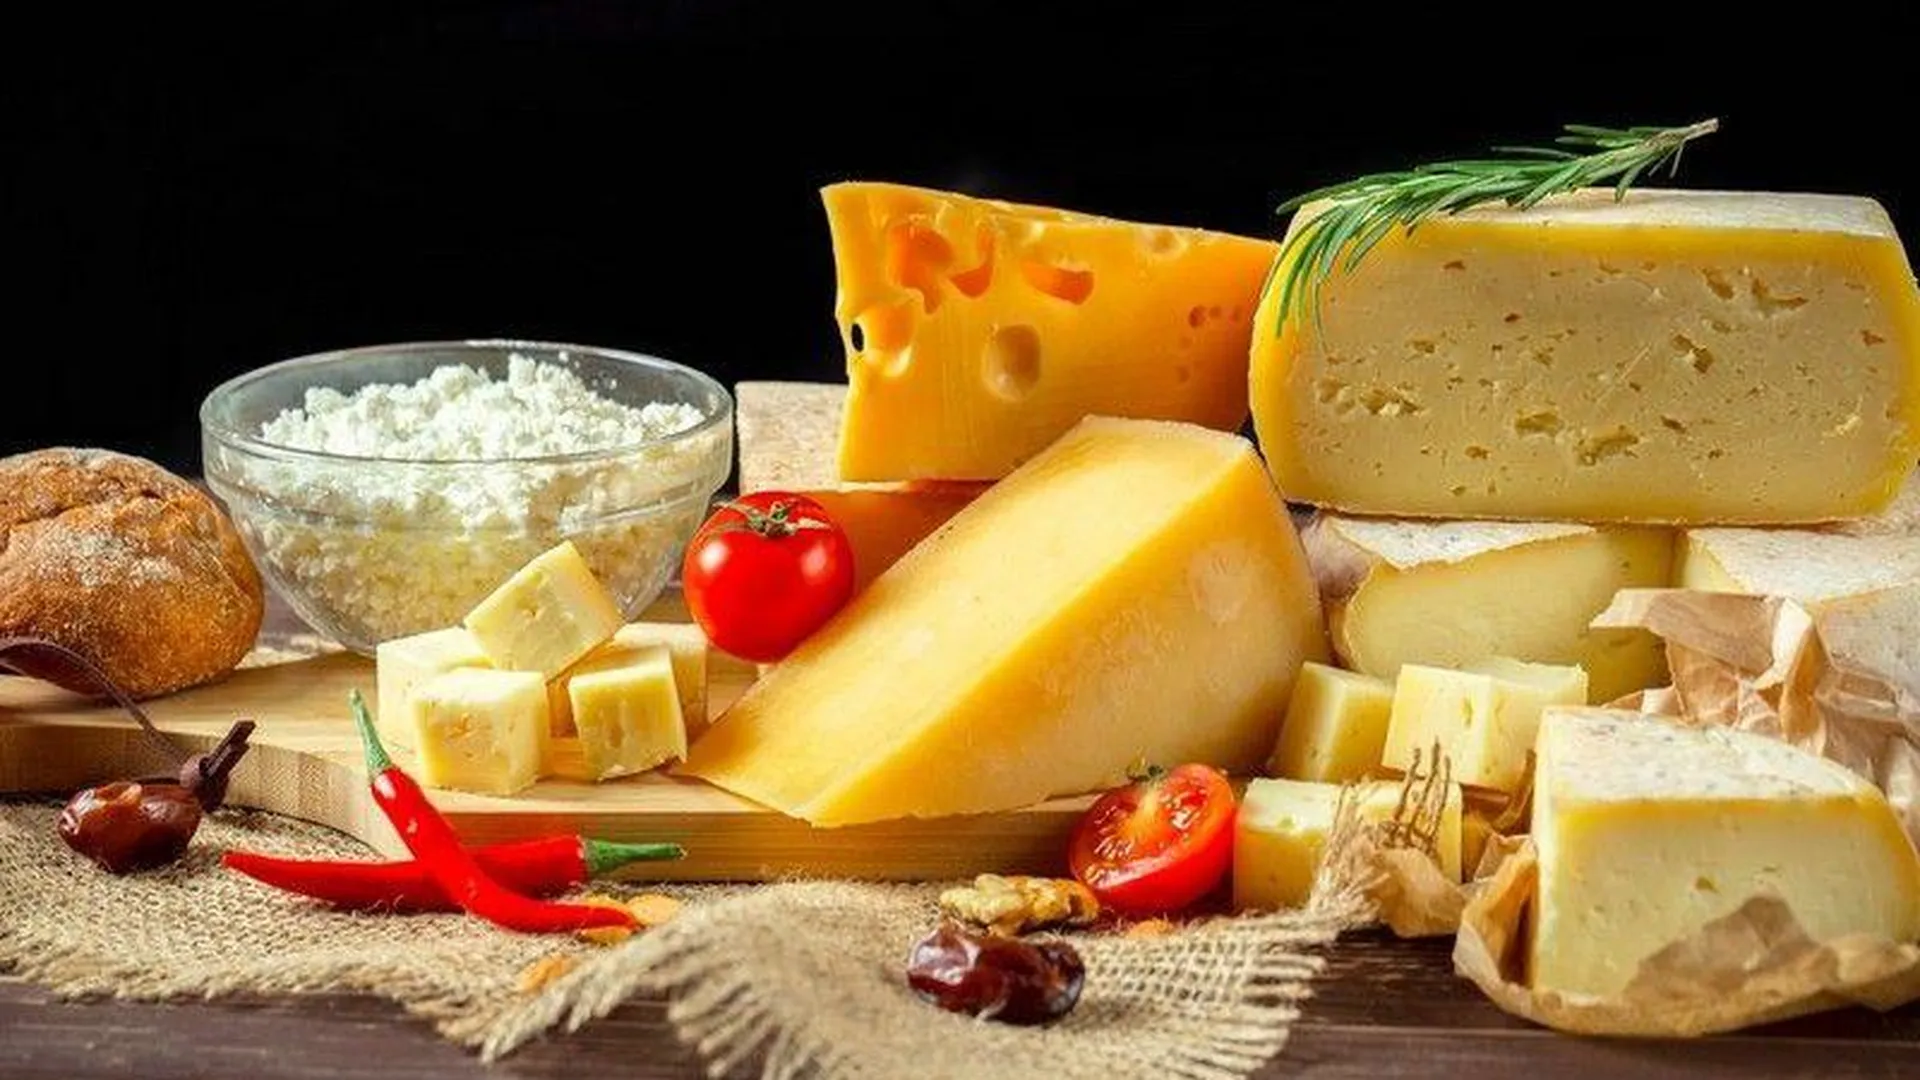 Сто килограммов сыра представят на стенде Подмосковья в рамках ПМЭФ